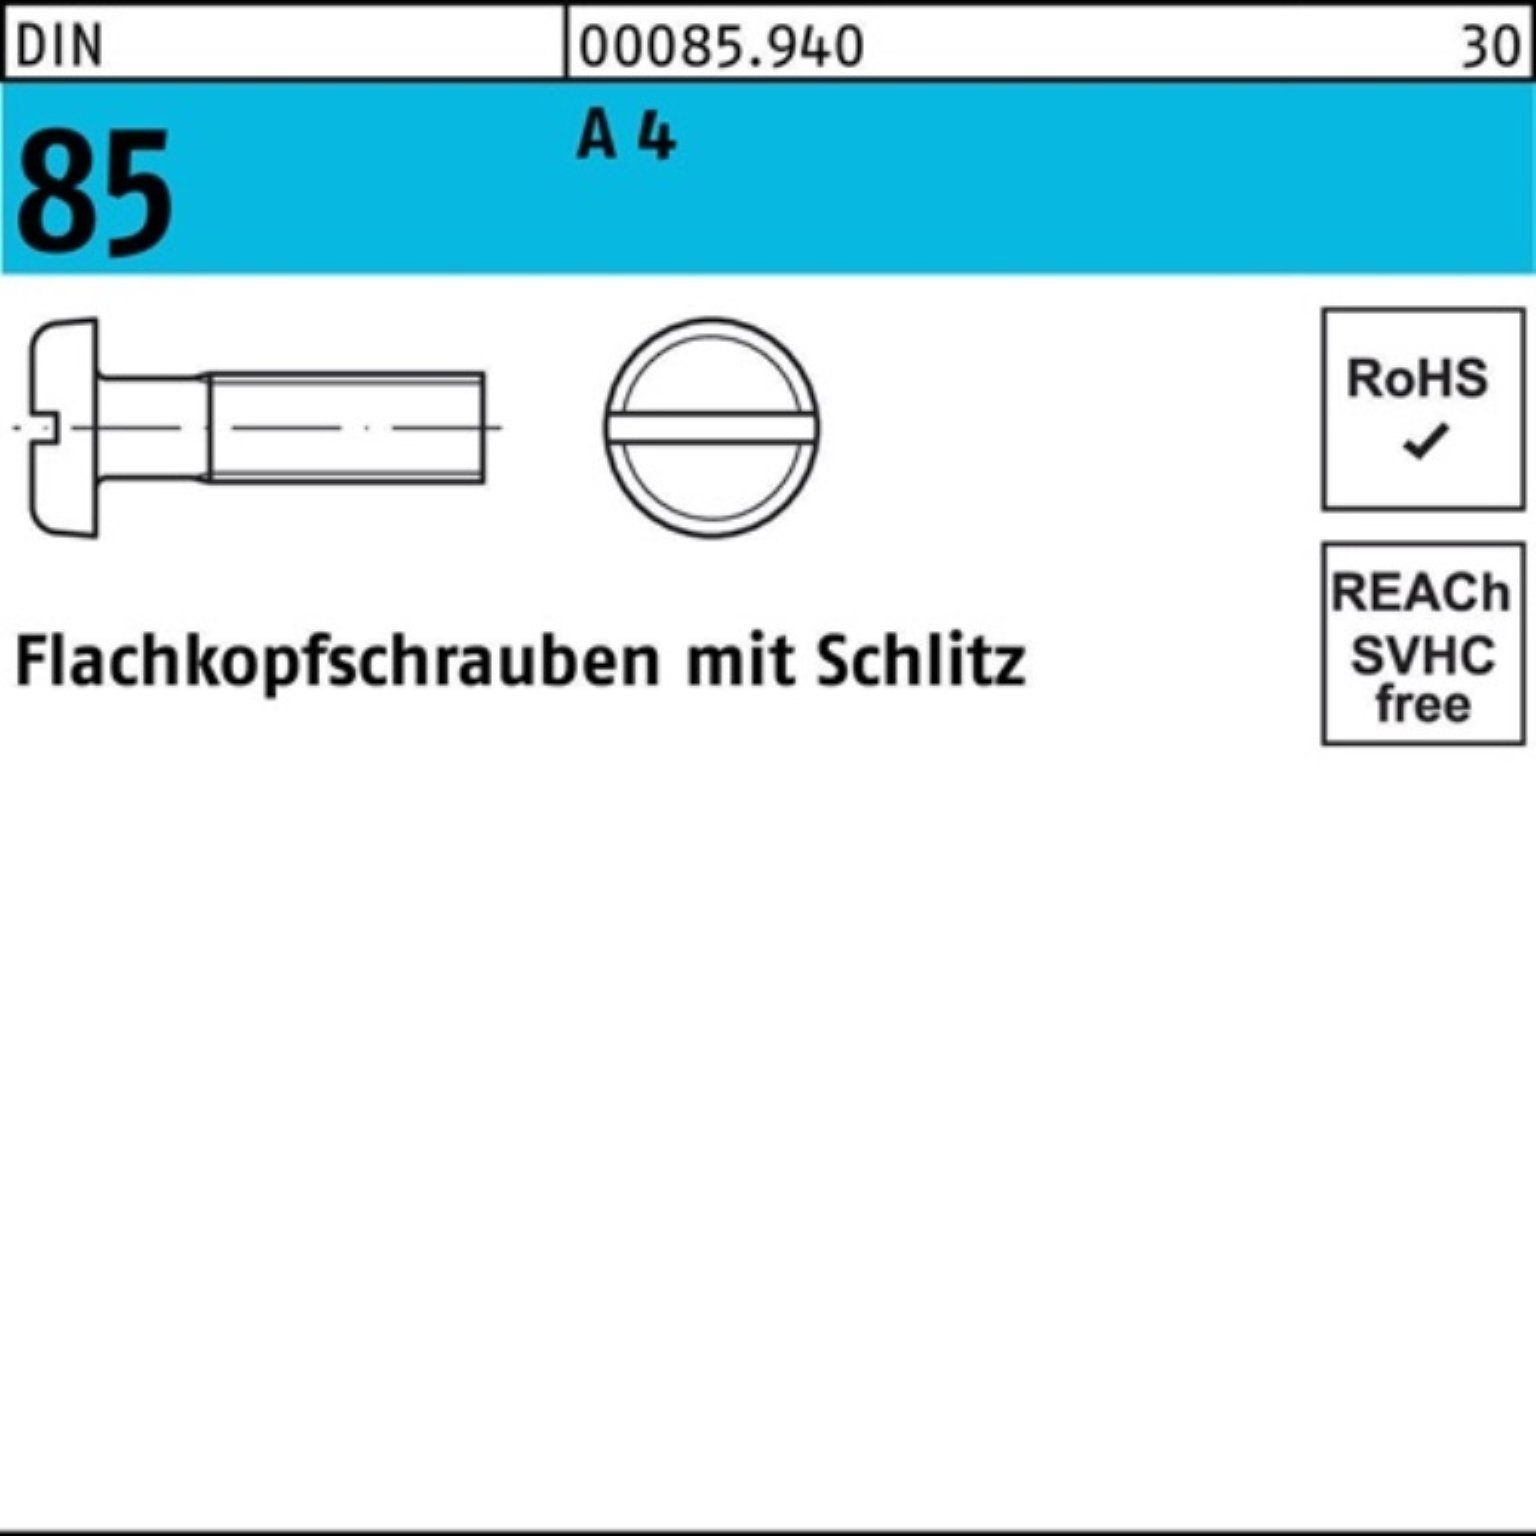 DIN S 1580 Reyher 1000 4 A Flachkopfschraube Schlitz 85/ISO Pack 6 M3x Schraube 1000er